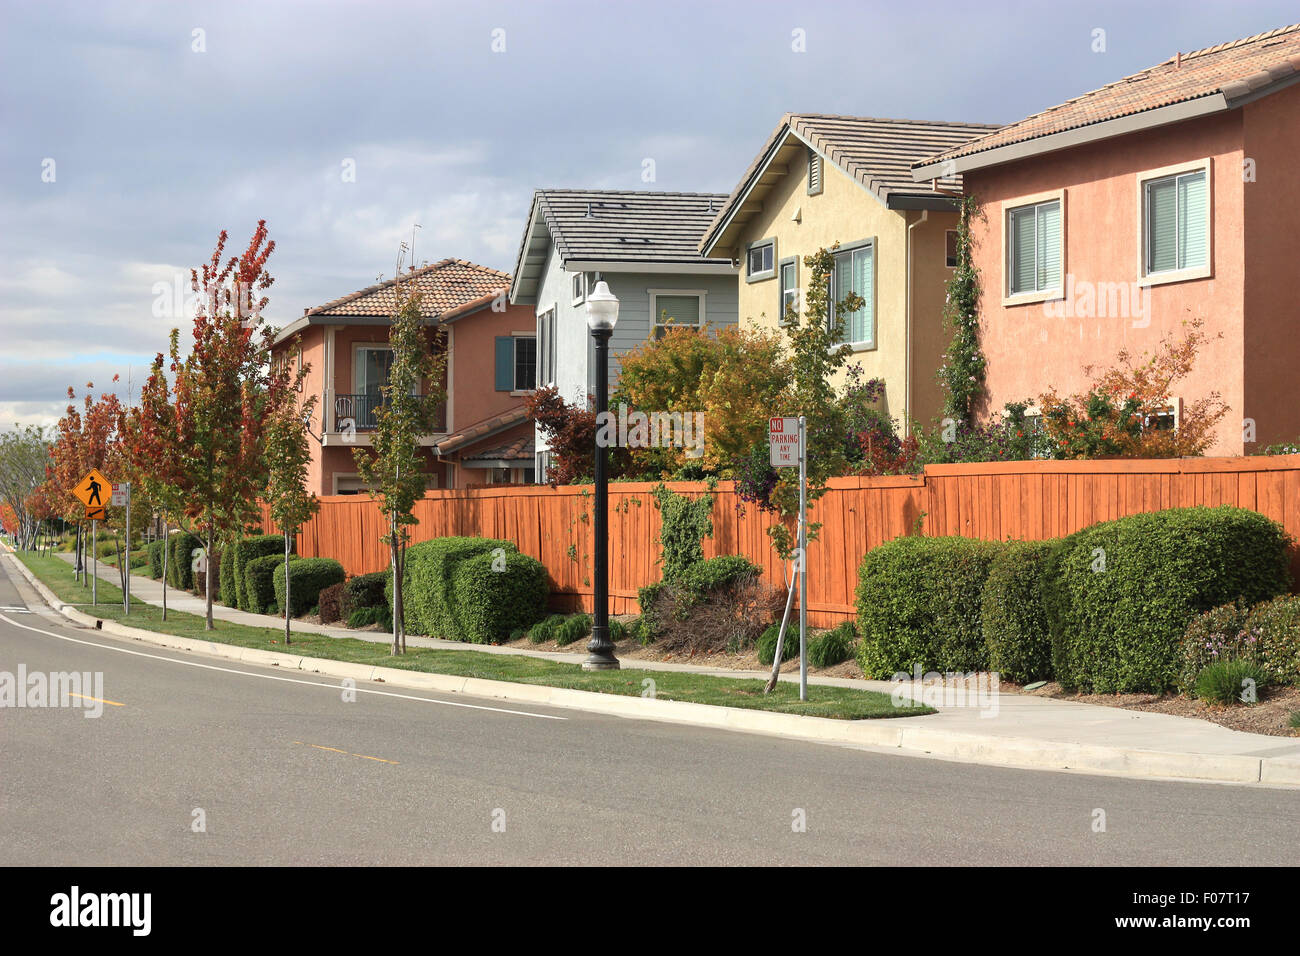 Row of houses in suburban neighborhood Stock Photo